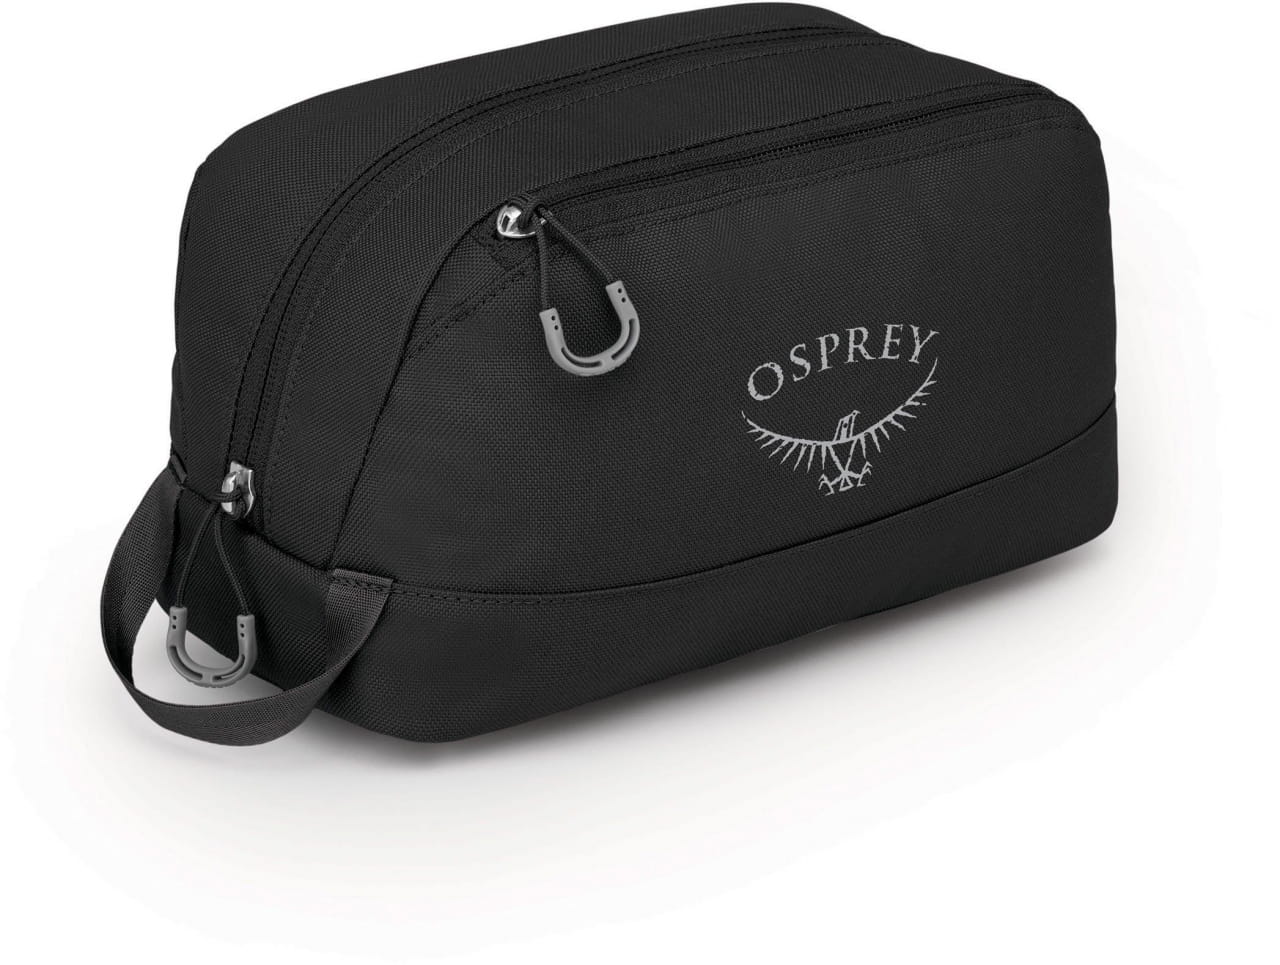 System für optimale Verpackung Osprey Daylite Organizer Kit